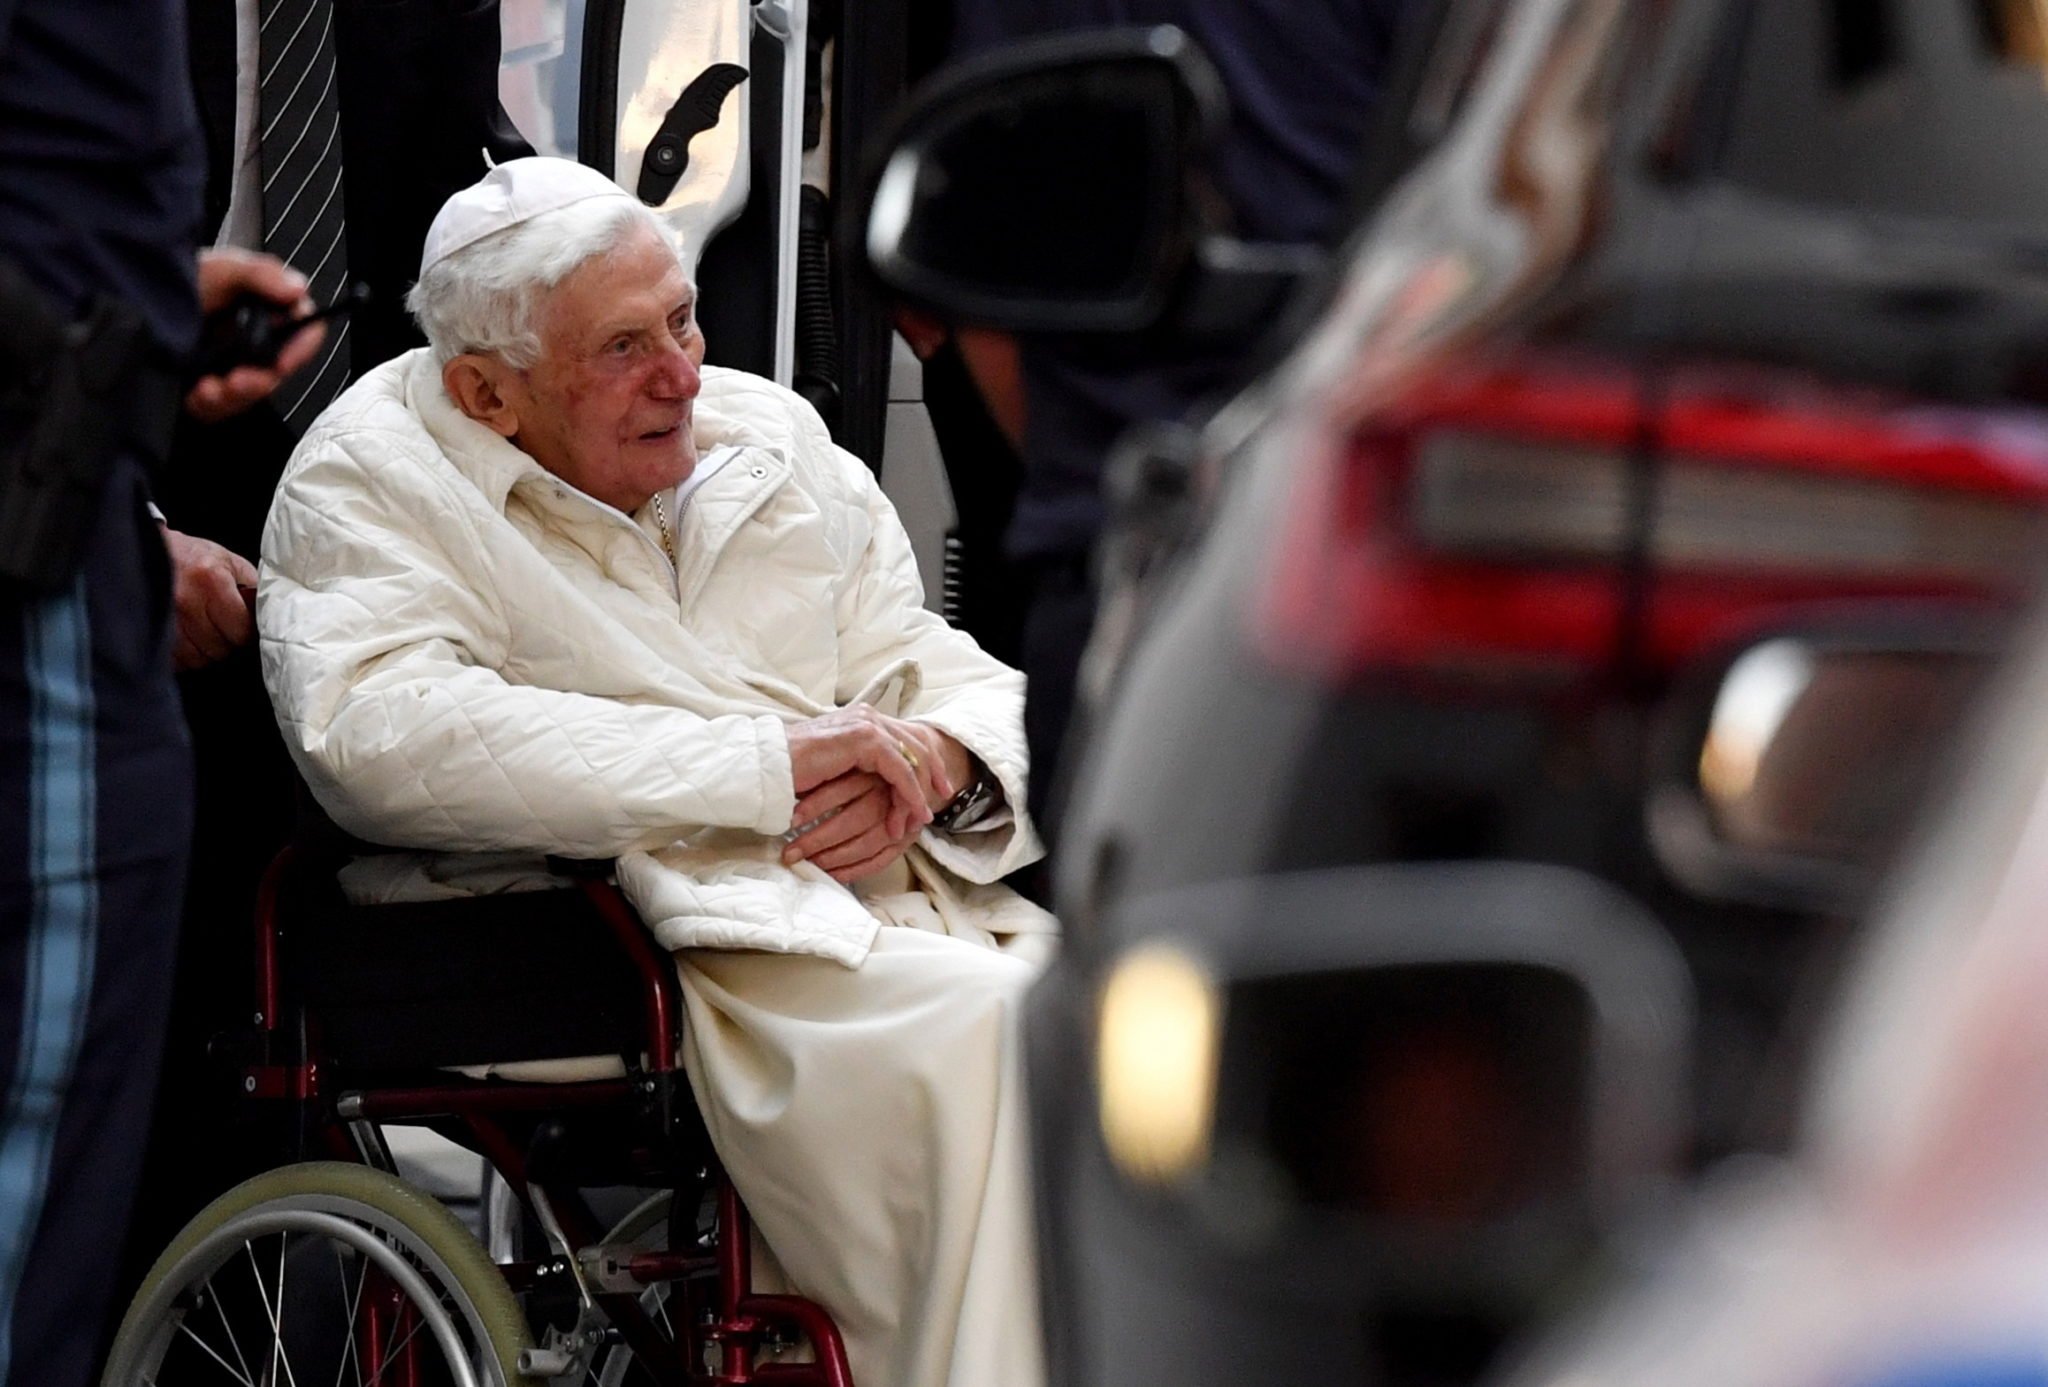 Papież senior udał się do Niemiec, by odwiedzić chorego brata. Benedykt XVI czuje się dobrze, a jego forma pozwoliła na tak daleką podróż. fot. EPA/PHILIPP GUELLAND